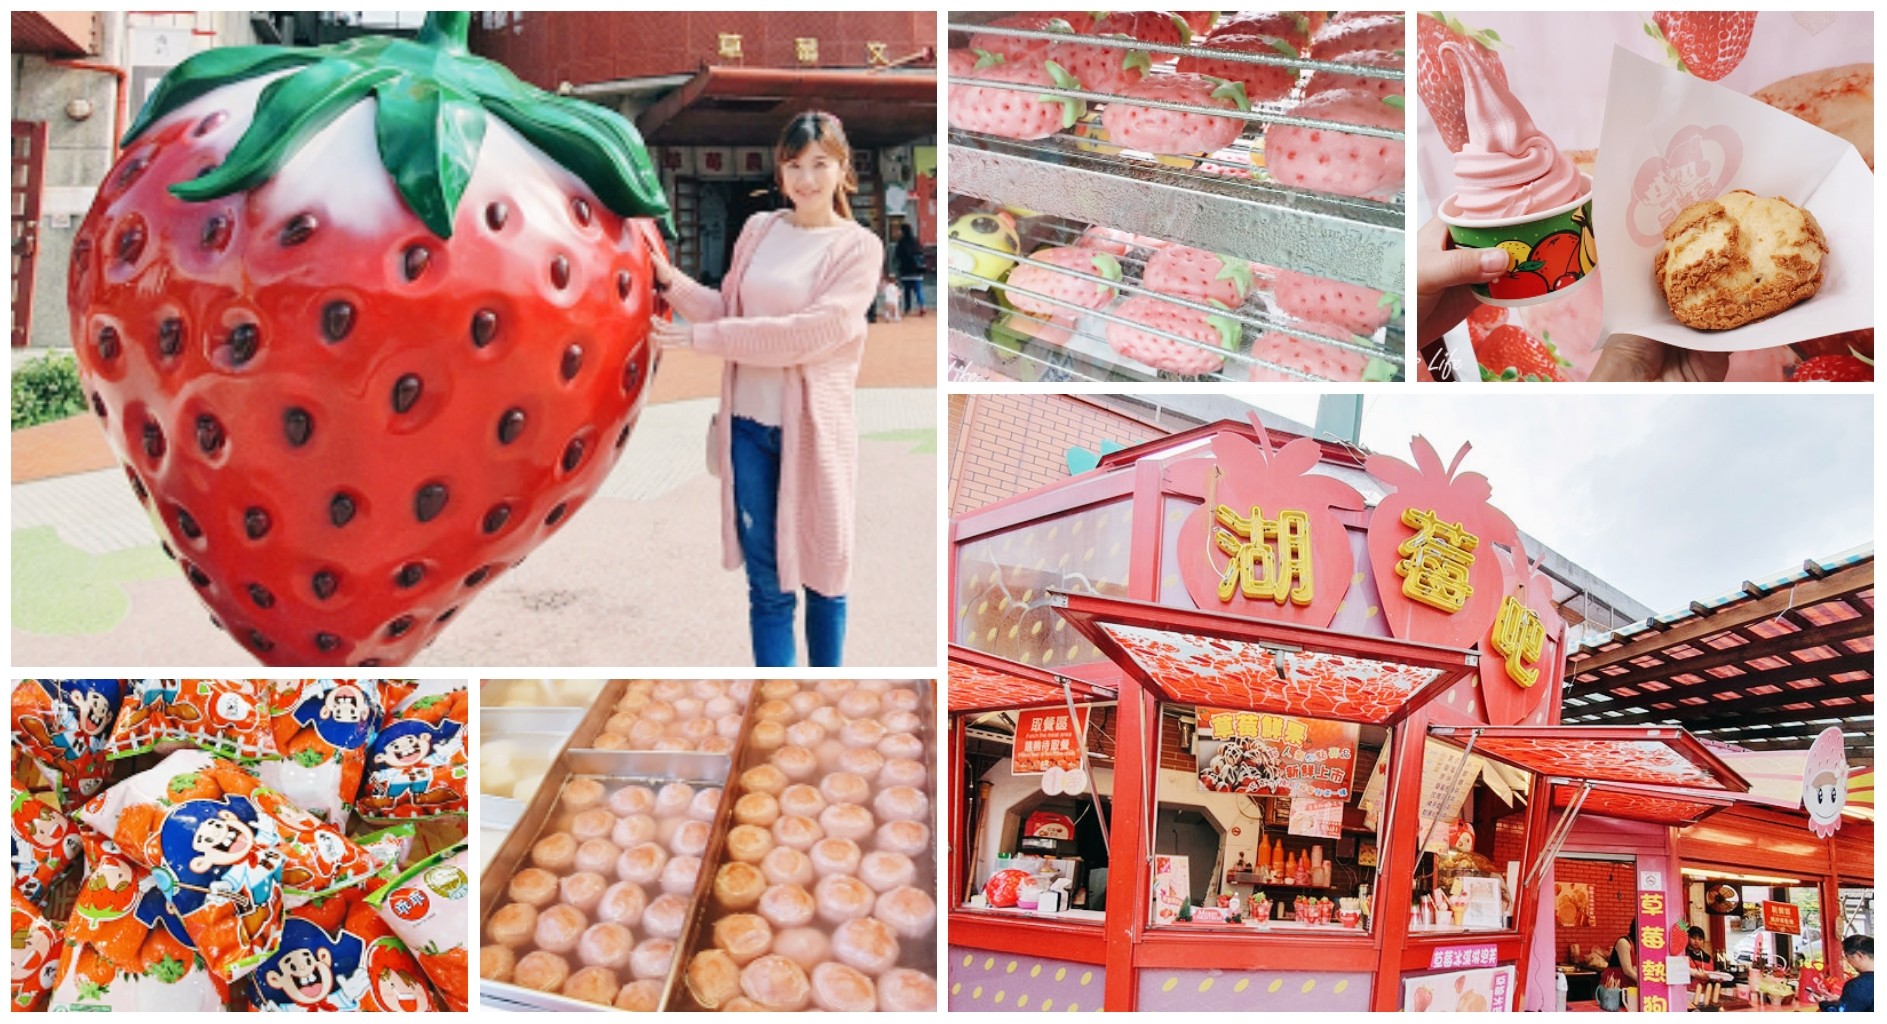 苗栗美食┃Hen厚食雞蛋糕┃草莓造型雞蛋糕，還能拍巨型大草莓 - yukiblog.tw